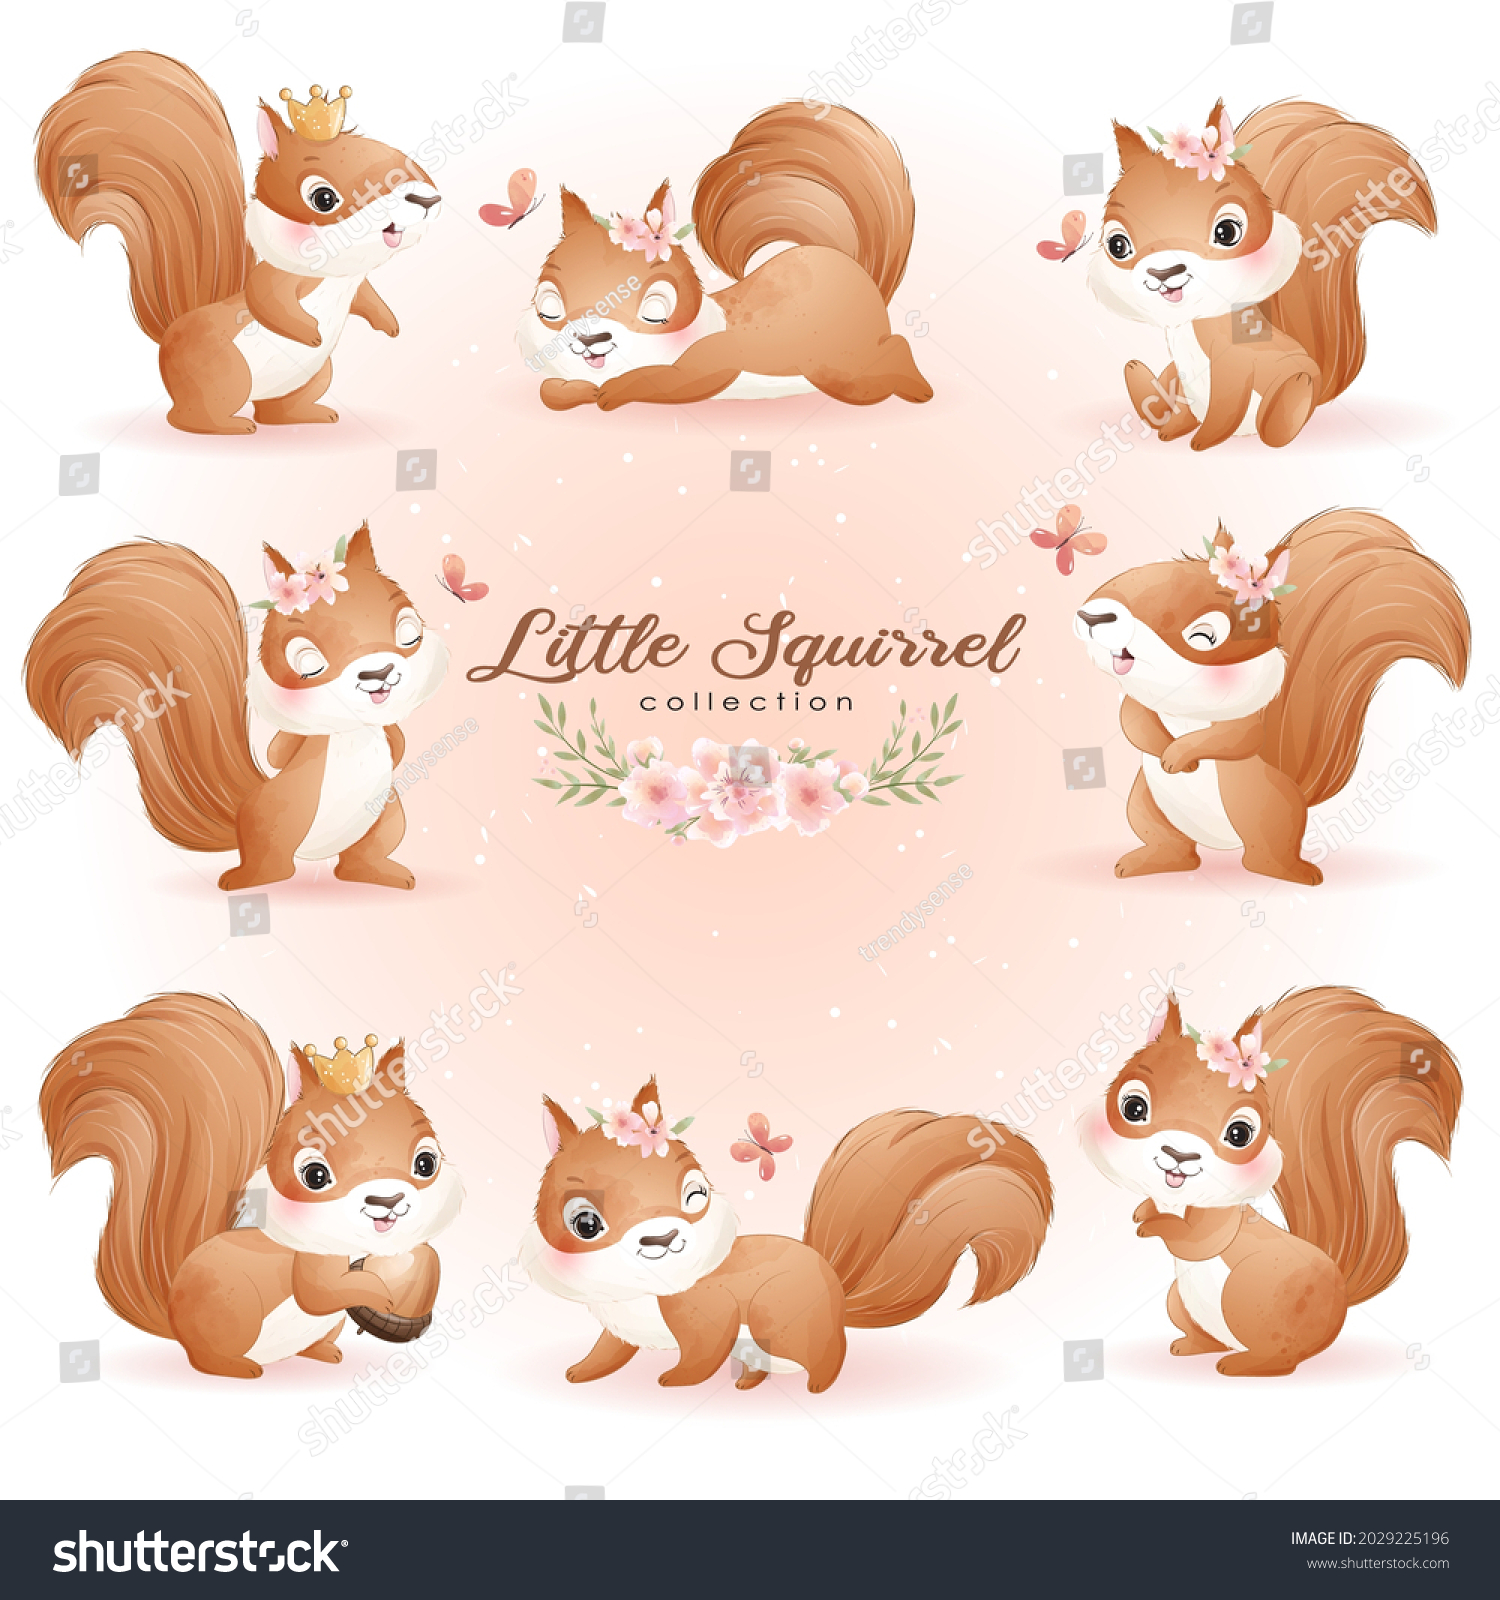 cute baby squirrel cartoon